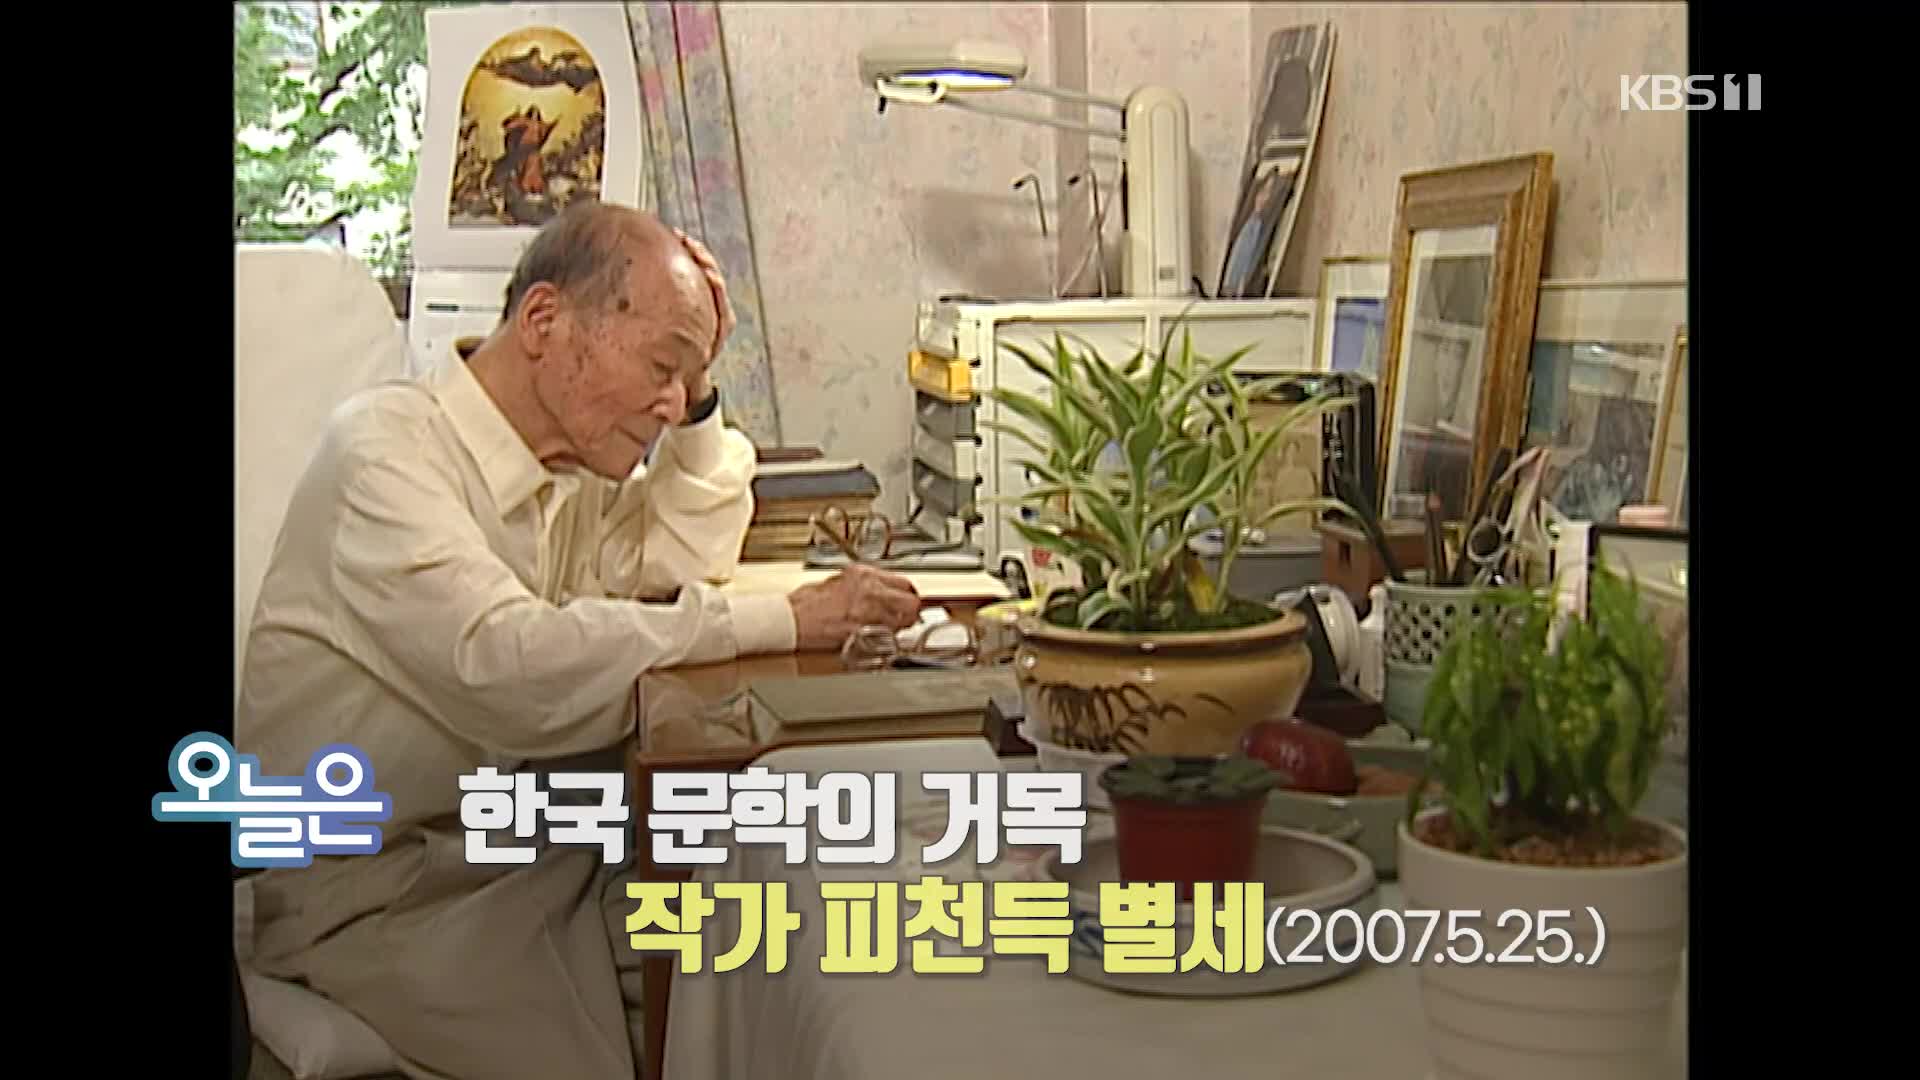 [오늘은] 한국 문학의 거목 작가 피천득 별세 (2007.5.25.)